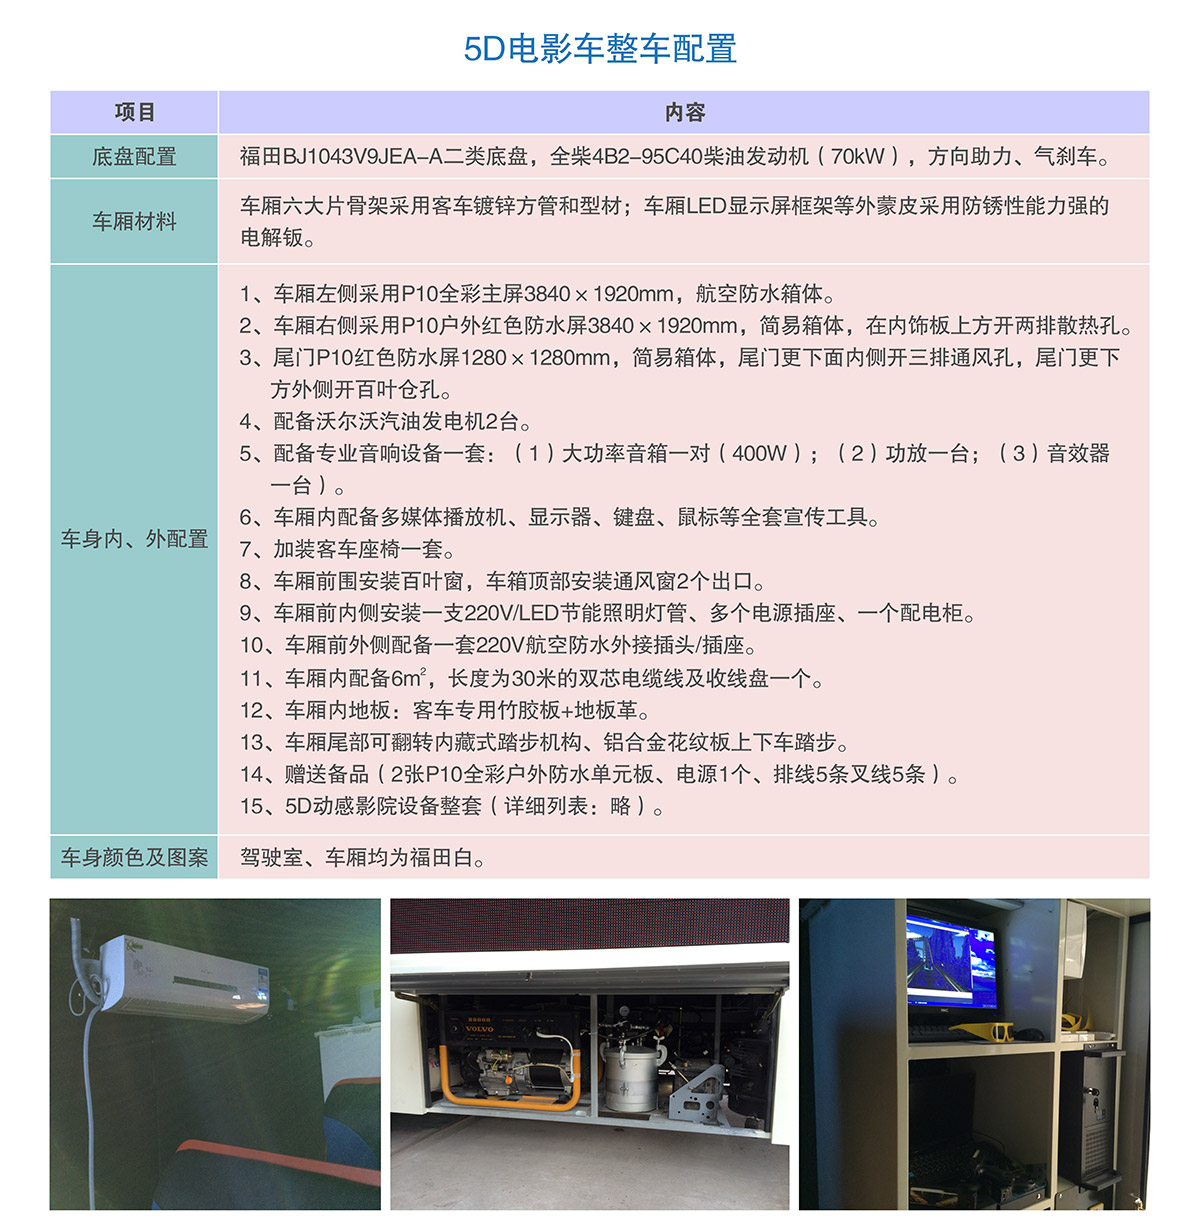 广东省广州奇影幻境5D电影车整车配置.jpg